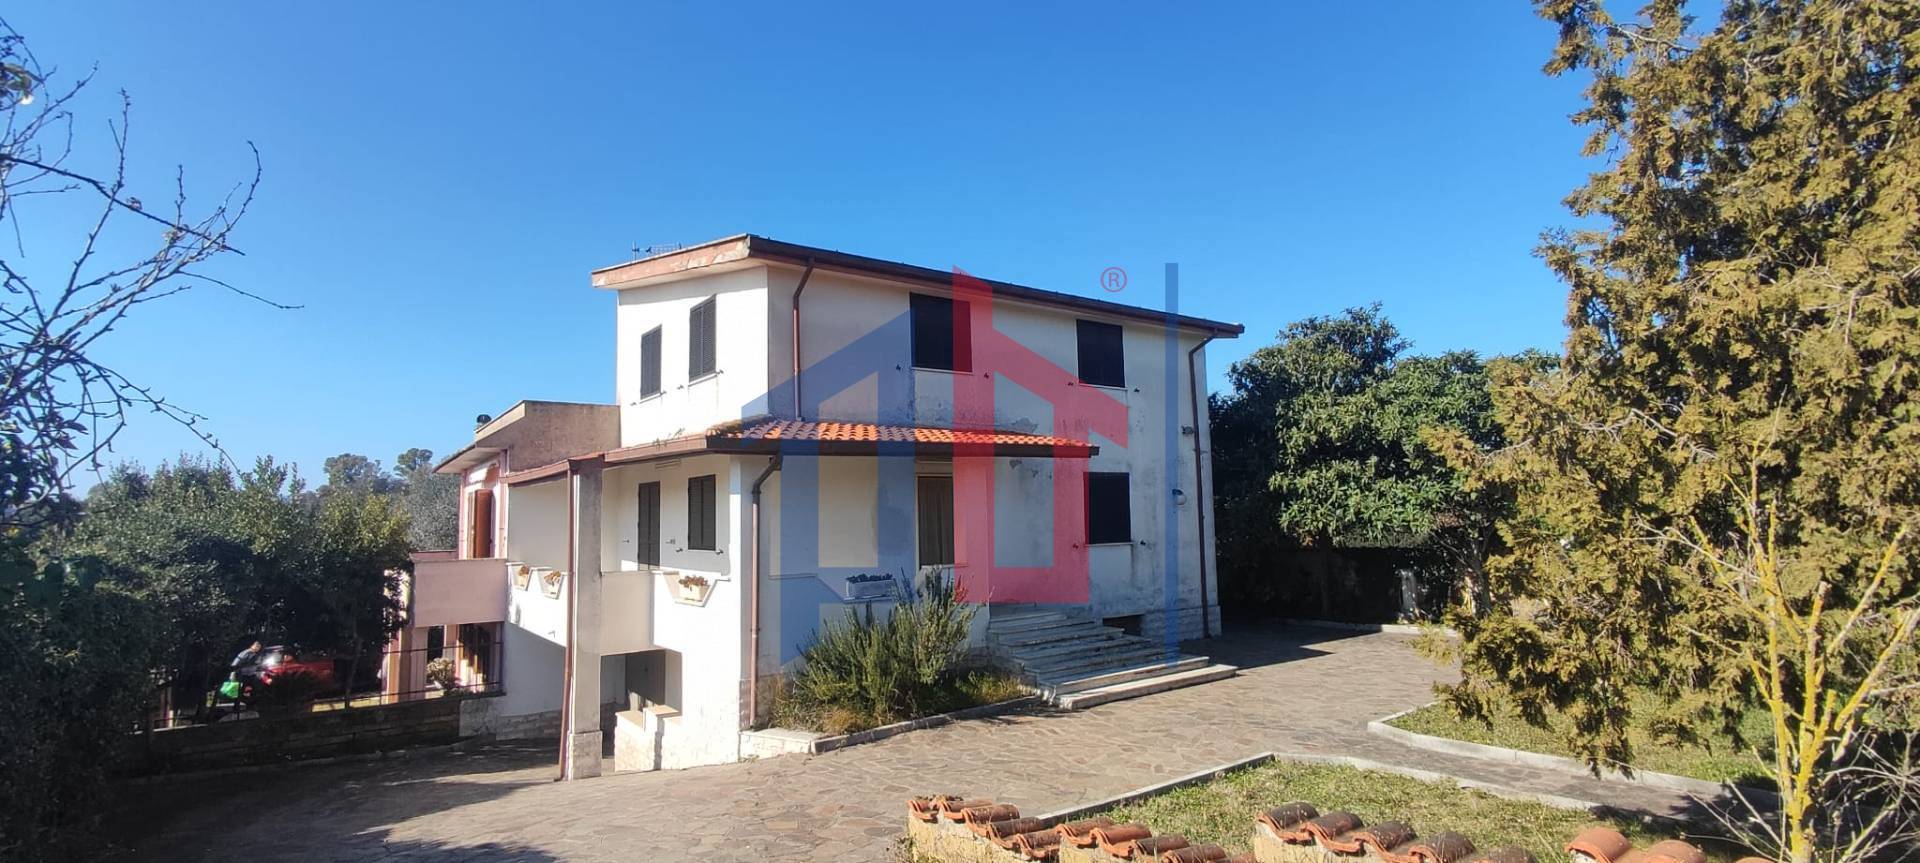 Villa Bifamiliare in vendita a Aprilia, 6 locali, zona ignano, prezzo € 214.000 | PortaleAgenzieImmobiliari.it